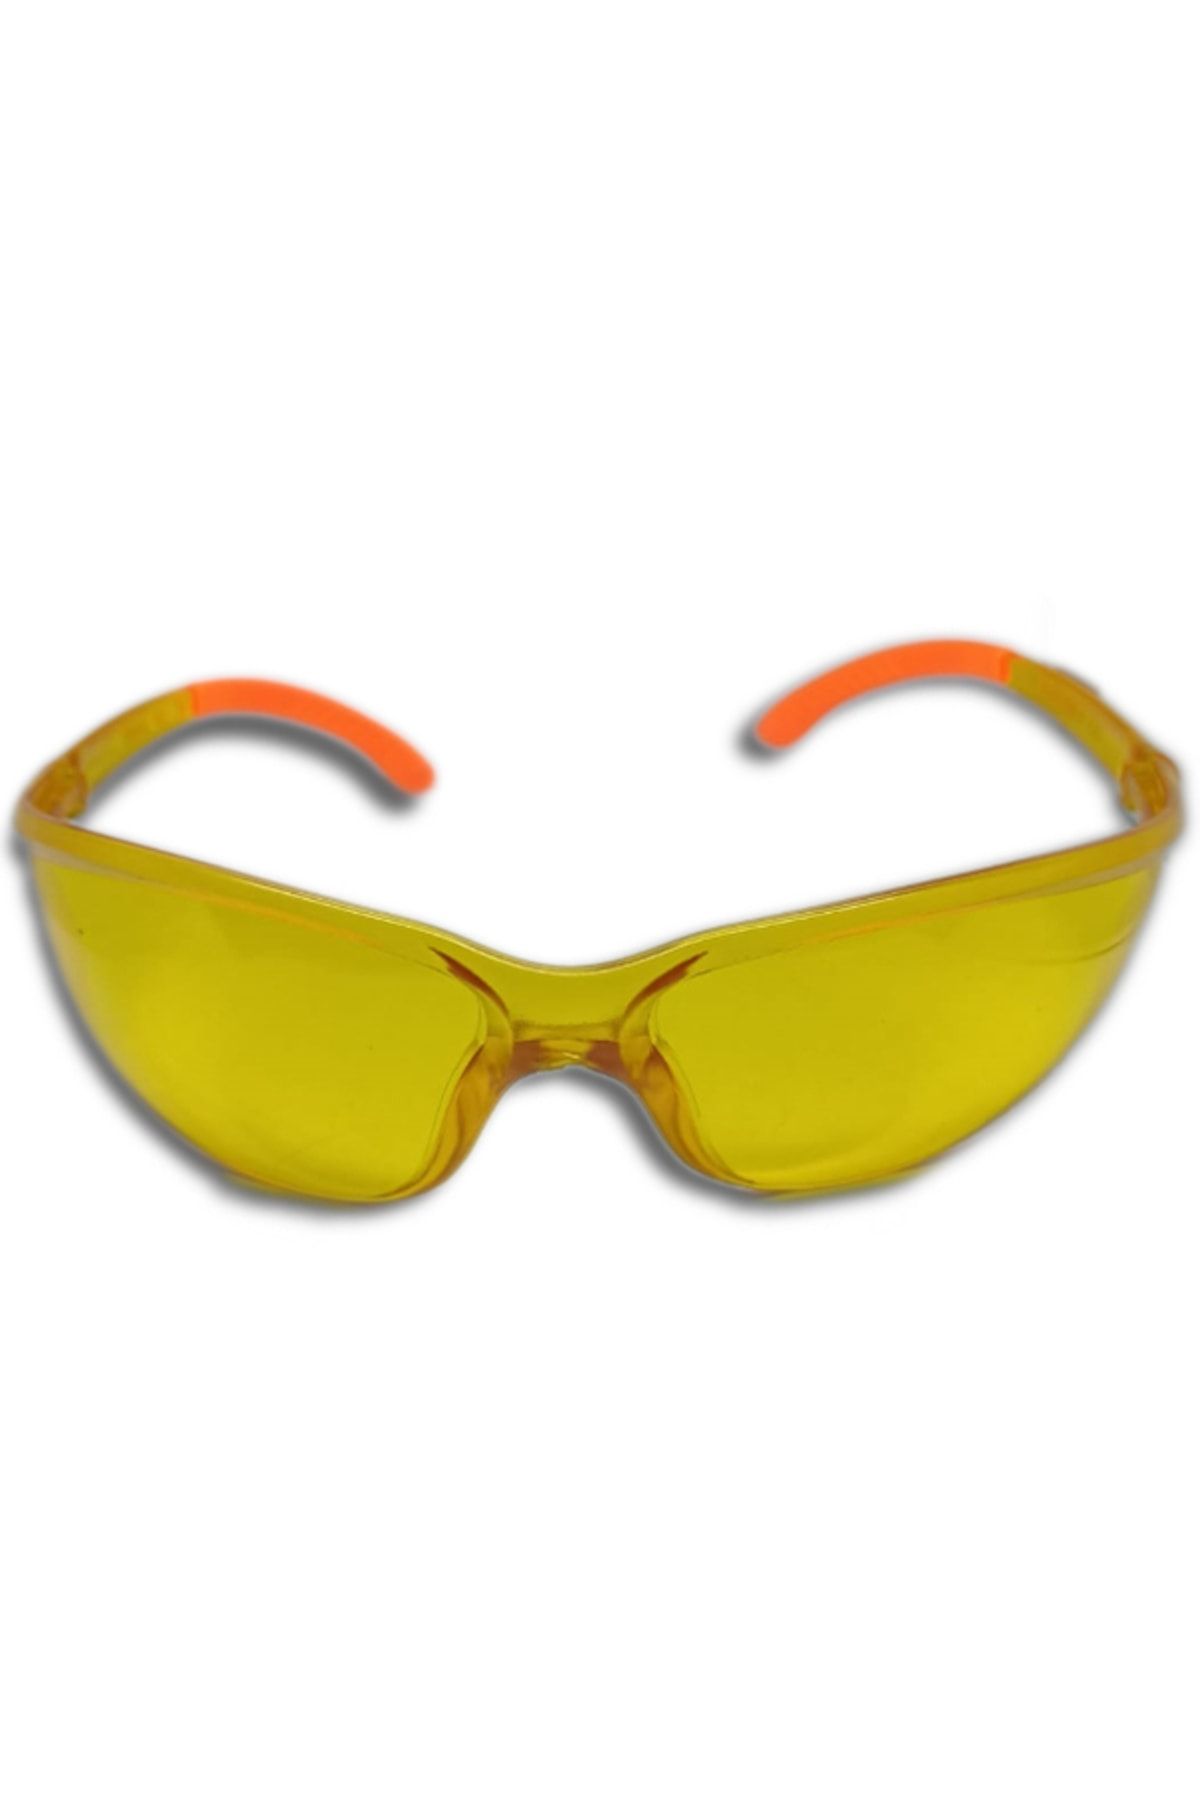 ARMONİKONYA Sport Sarı Ipl Lazer Uygulama Epilasyon Gözlüğü Mavi Işın Koruyucu Gözlük Göz Koruyucu Lazer